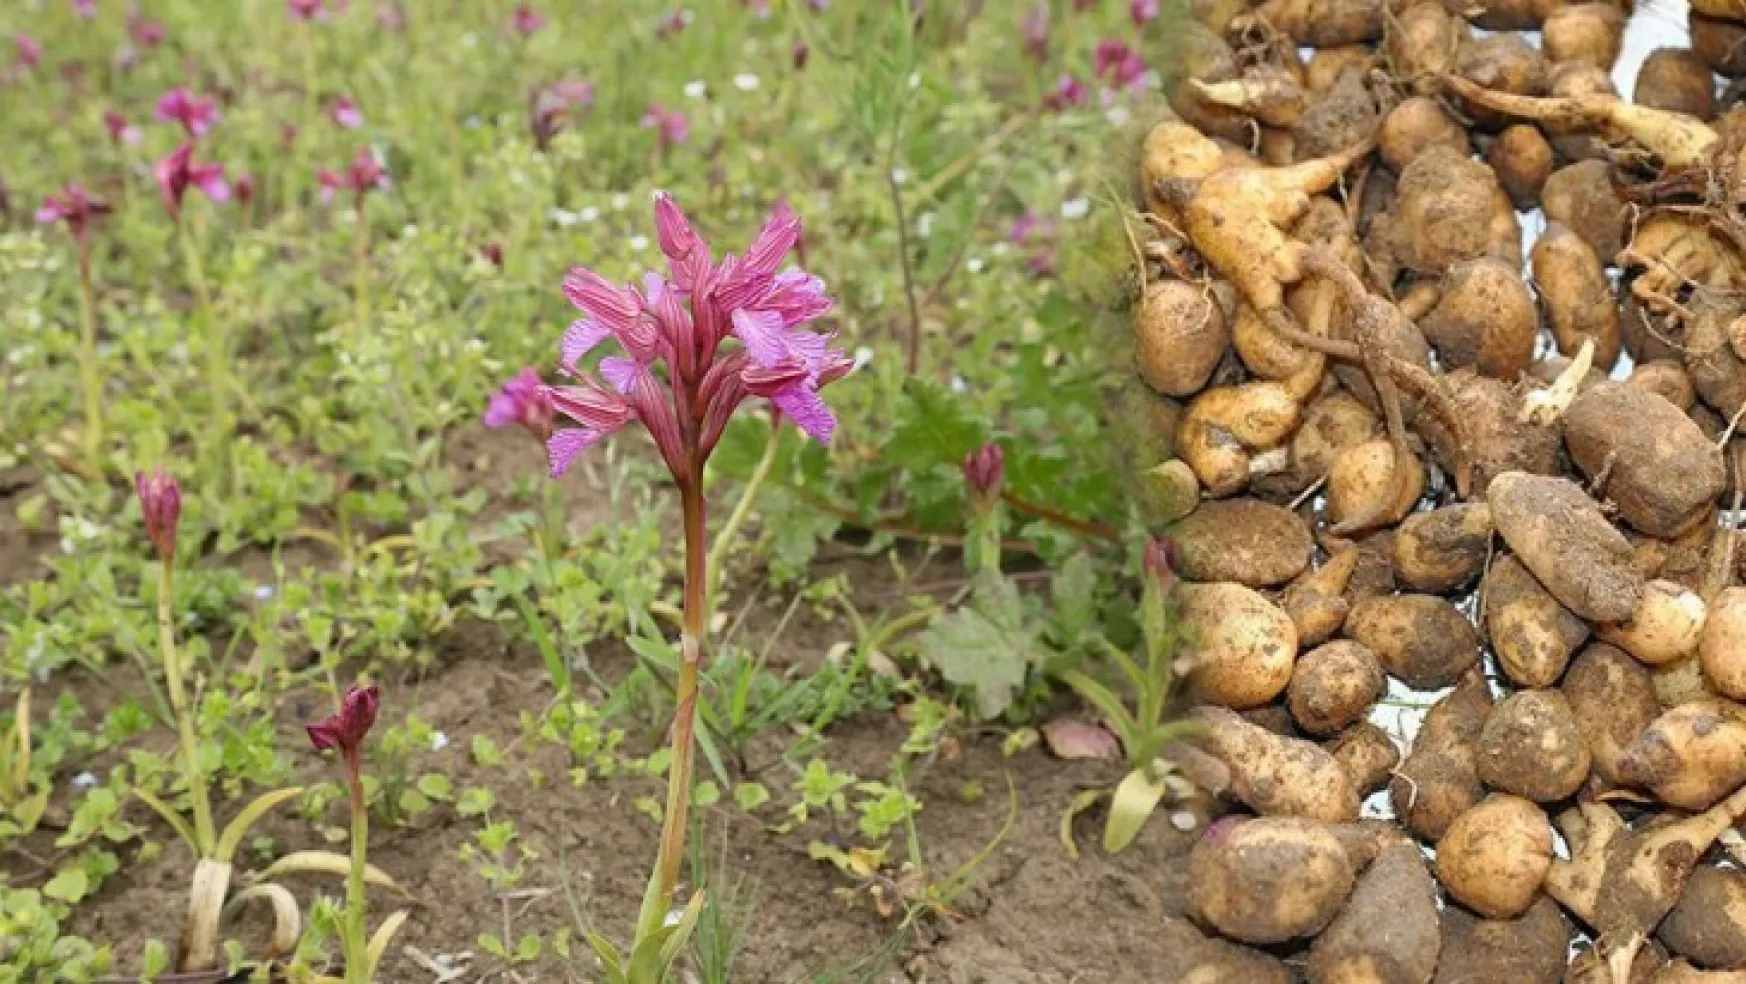 Yeşilyurt Belediyesi, 4.000 Metrekare Alanda Salep Orkidesi Üretimine Başladı